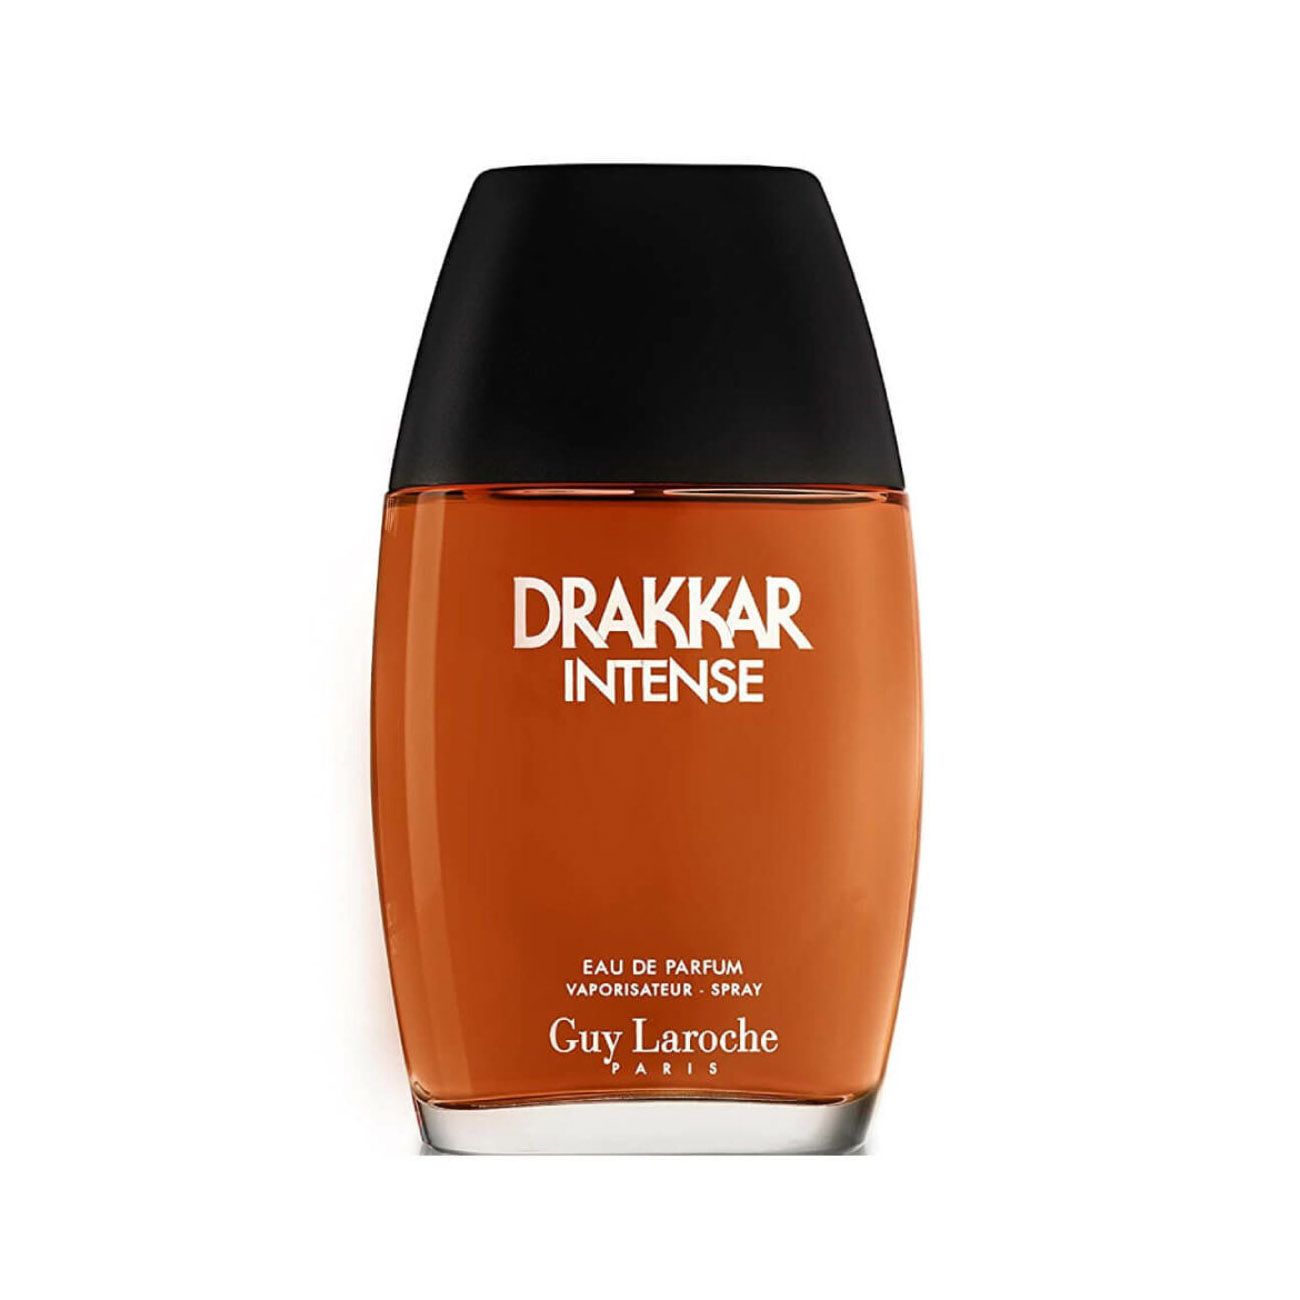 Guy Laroche Drakkar Intense Eau De Parfum For Men 100ml Tester at Ratans Online Shop - Perfumes Wholesale and Retailer Fragrance